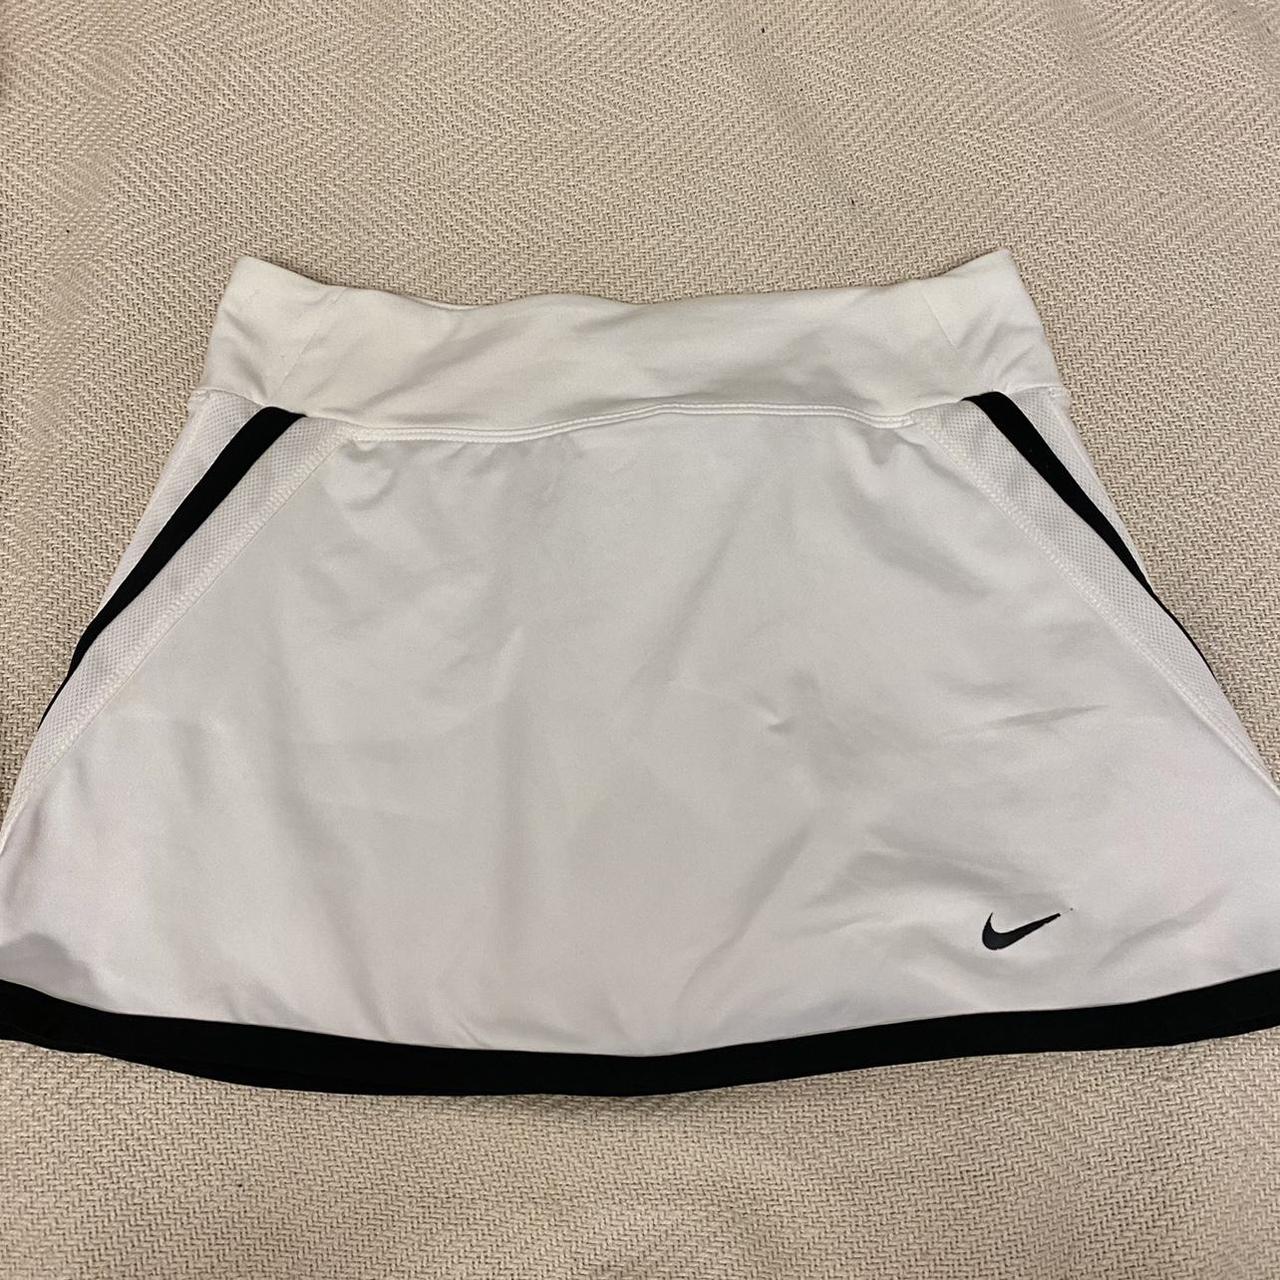 Nike Women's Black and White Skirt